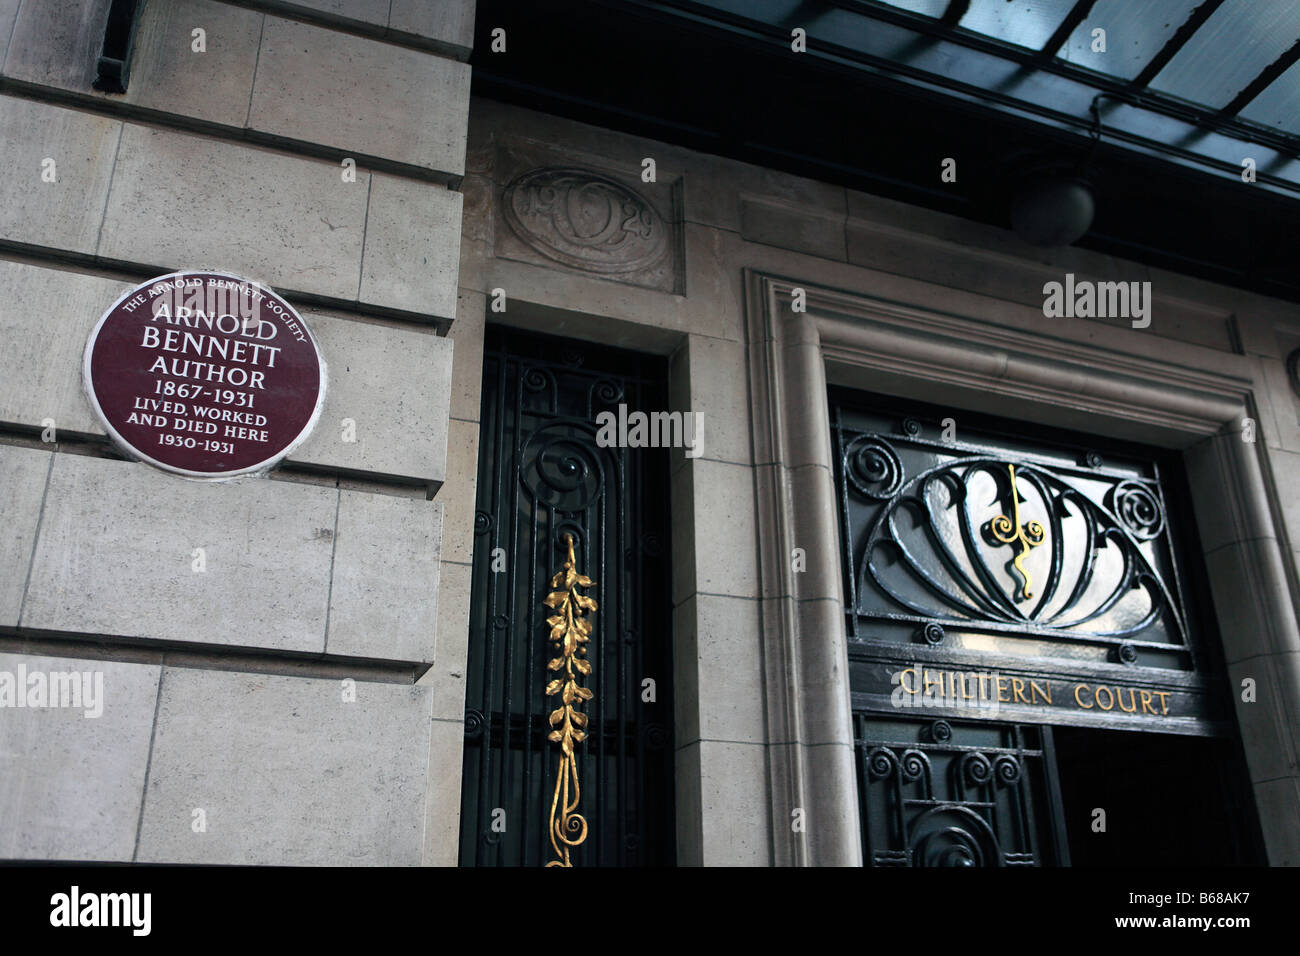 Royaume-uni Londres Baker street plaque brune à l'extérieur de la cour de chiltern où Arnold Bennett auteur a vécu et est mort Banque D'Images